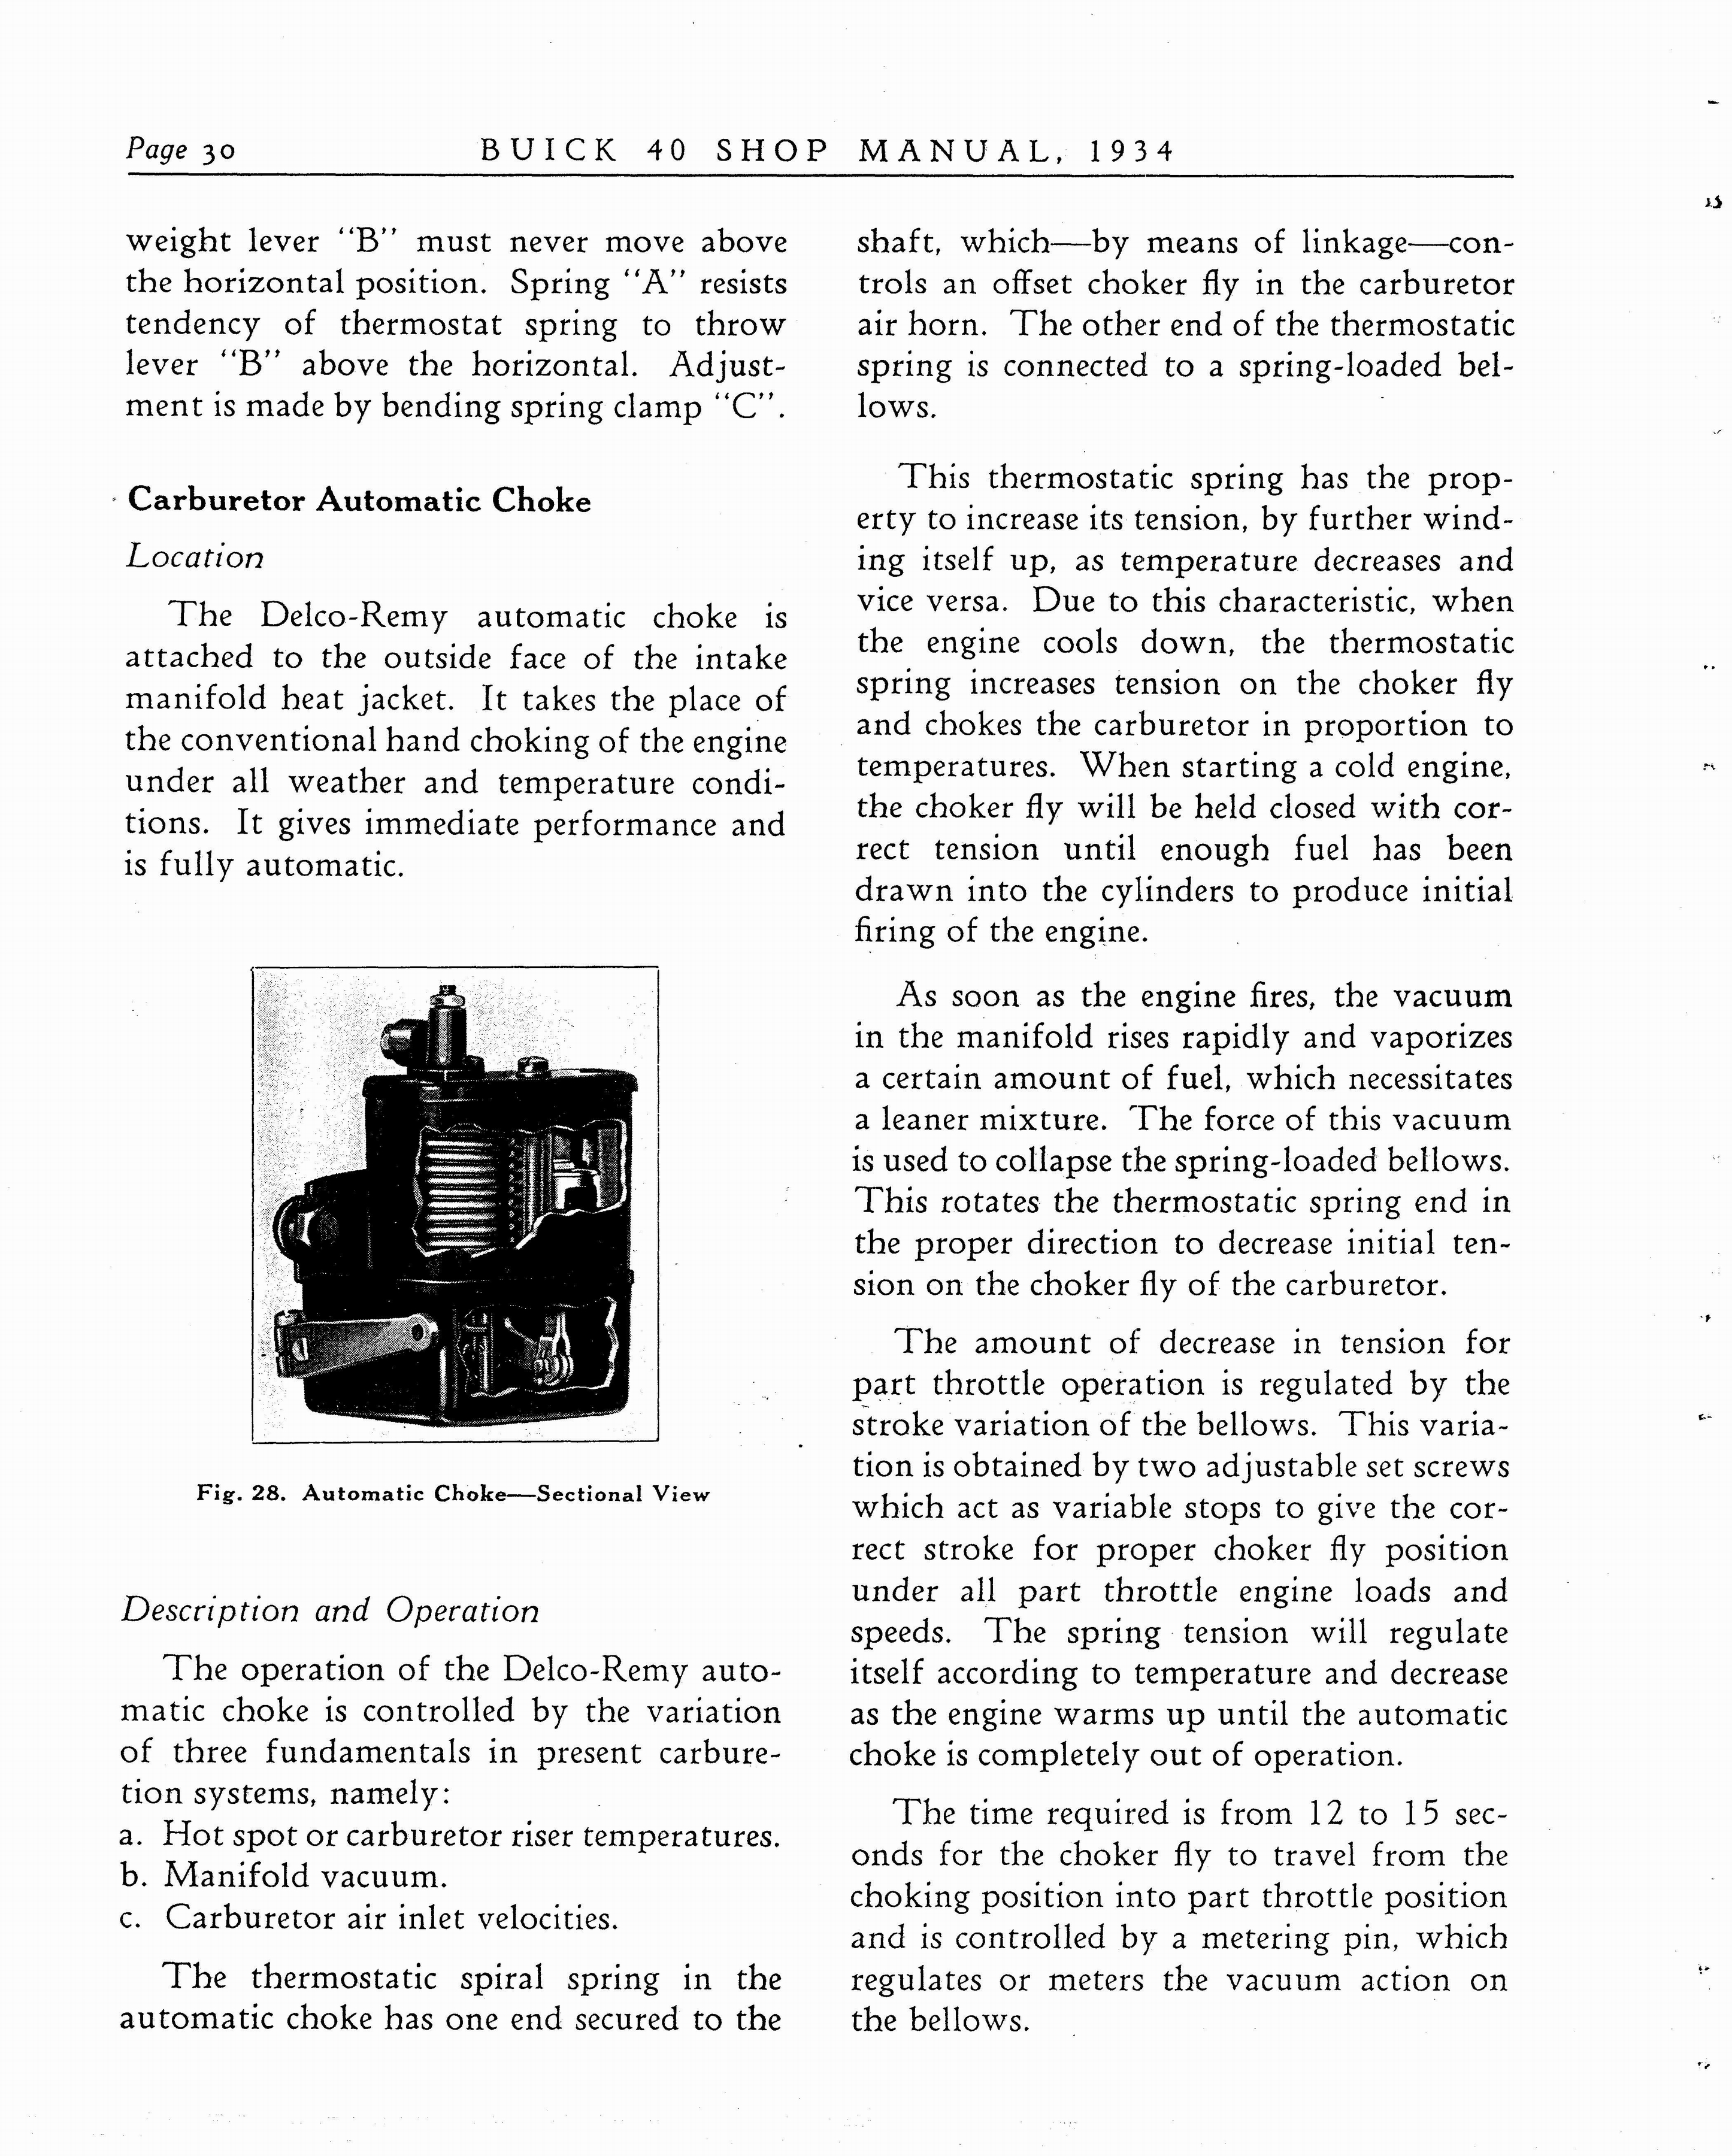 n_1934 Buick Series 40 Shop Manual_Page_031.jpg